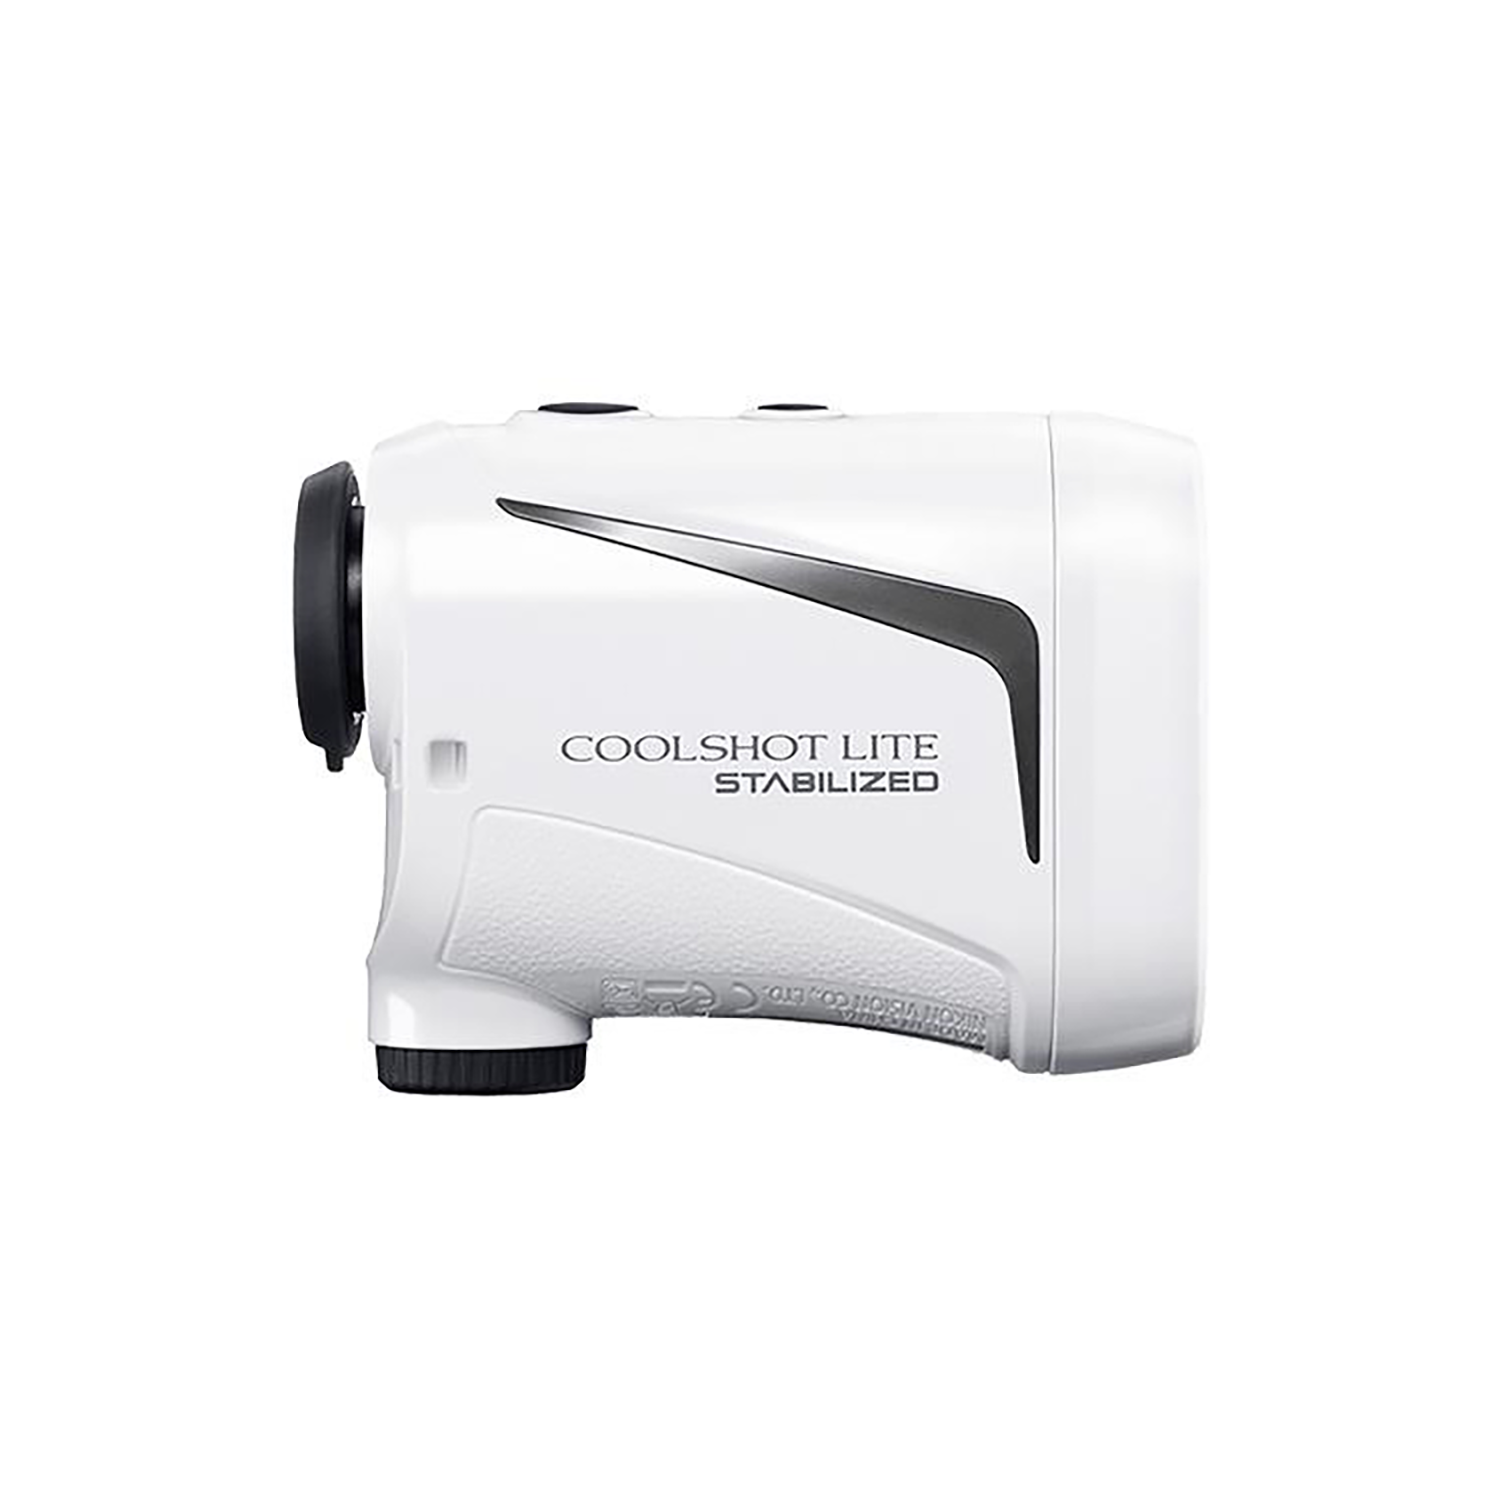 Nikon Coolshot Lite Stabilized Golf Rangefinder 16759 018208167593